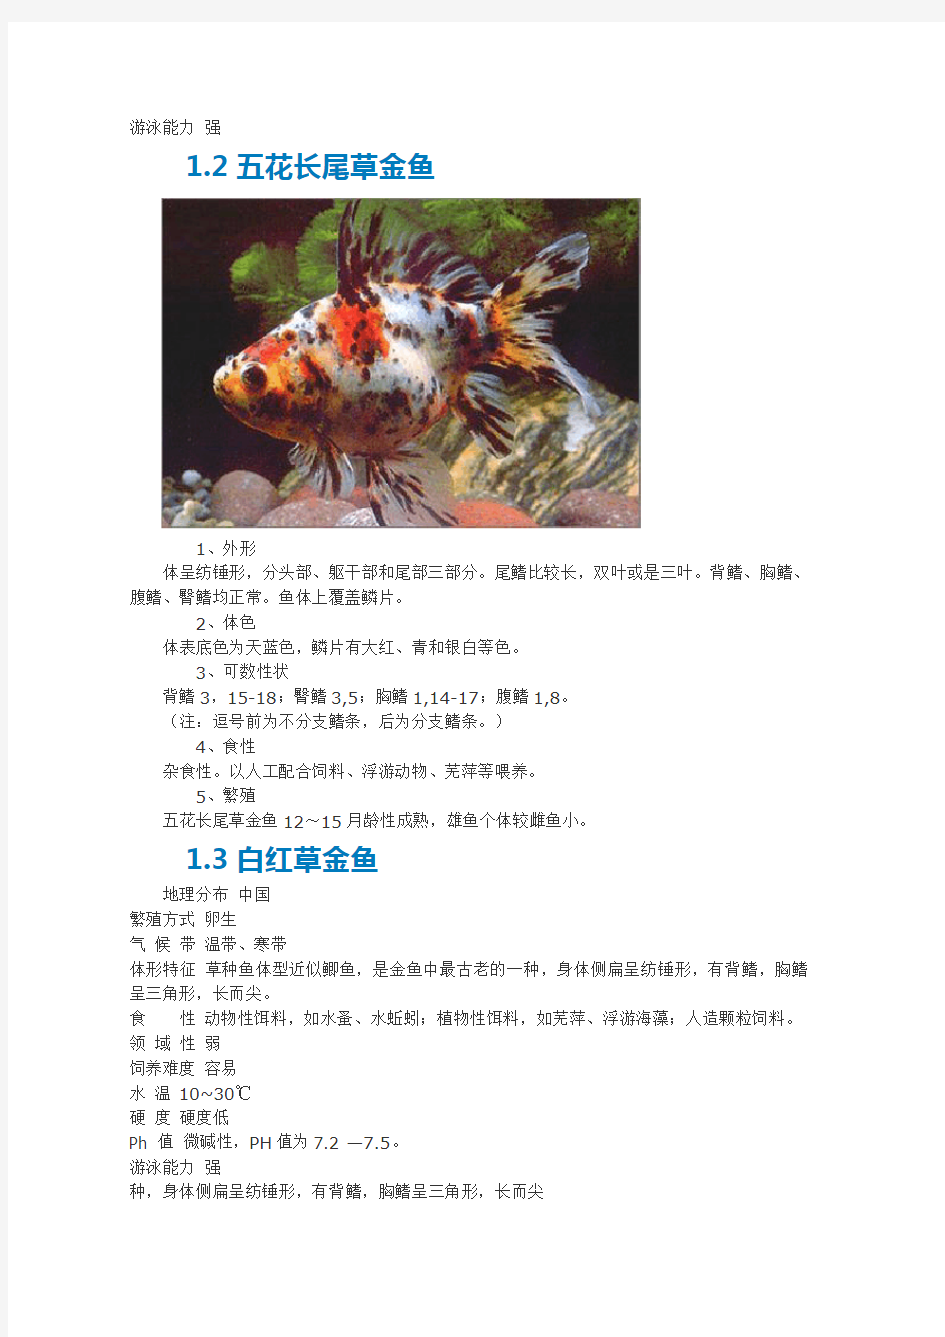 金鱼种类及附图